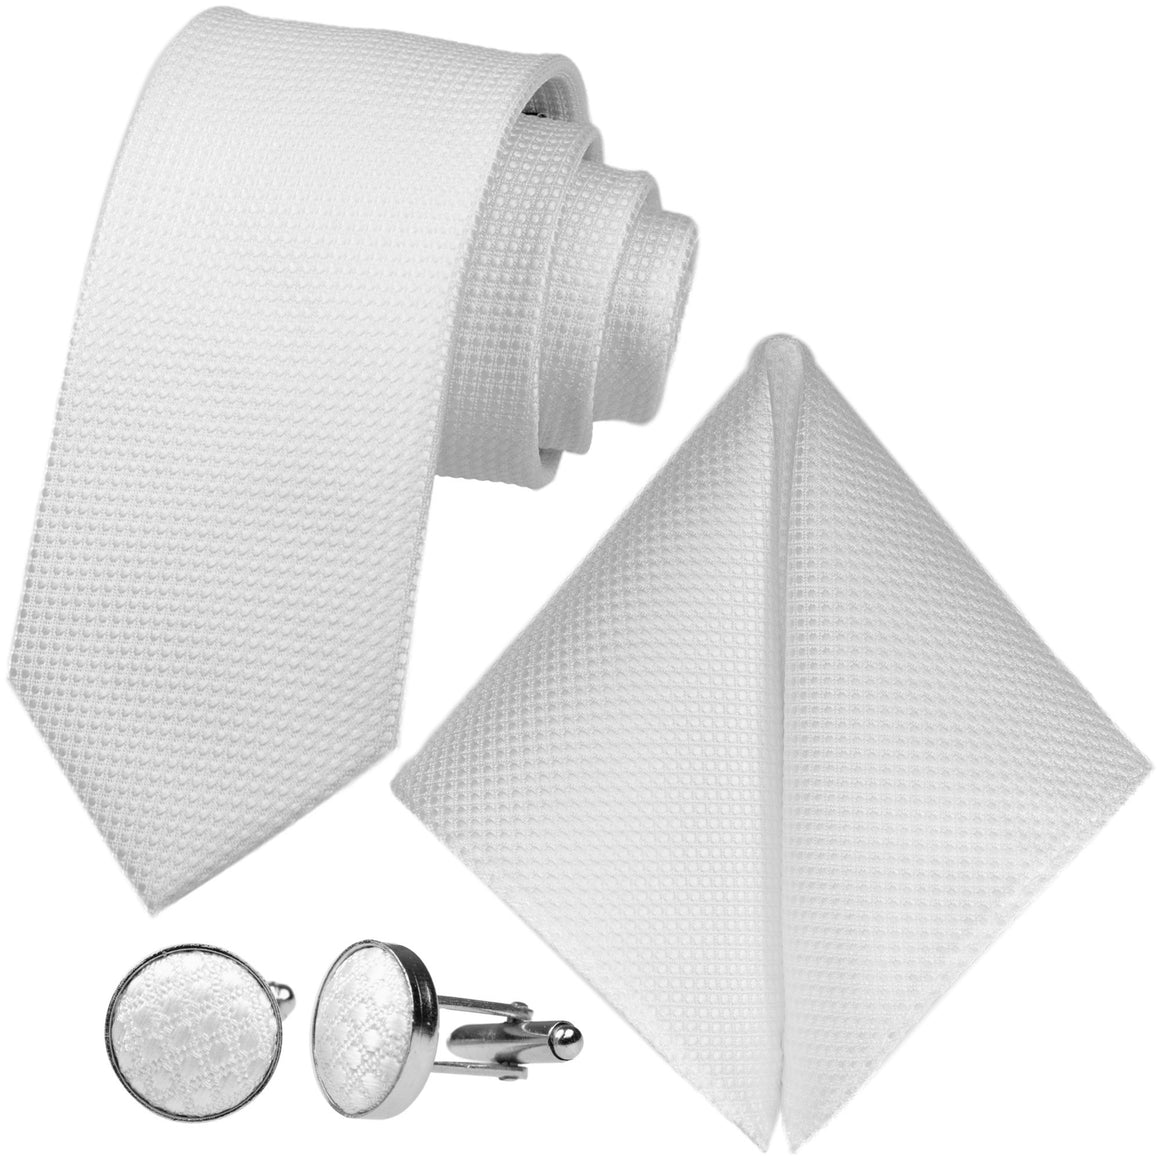 GASSANI 3 ks. Souprava, 8 cm úzká bílá pánská kravata, extra dlouhá, svatební kravata, souprava kravat, pánská kravata, kapesník, manžetové knoflíčky